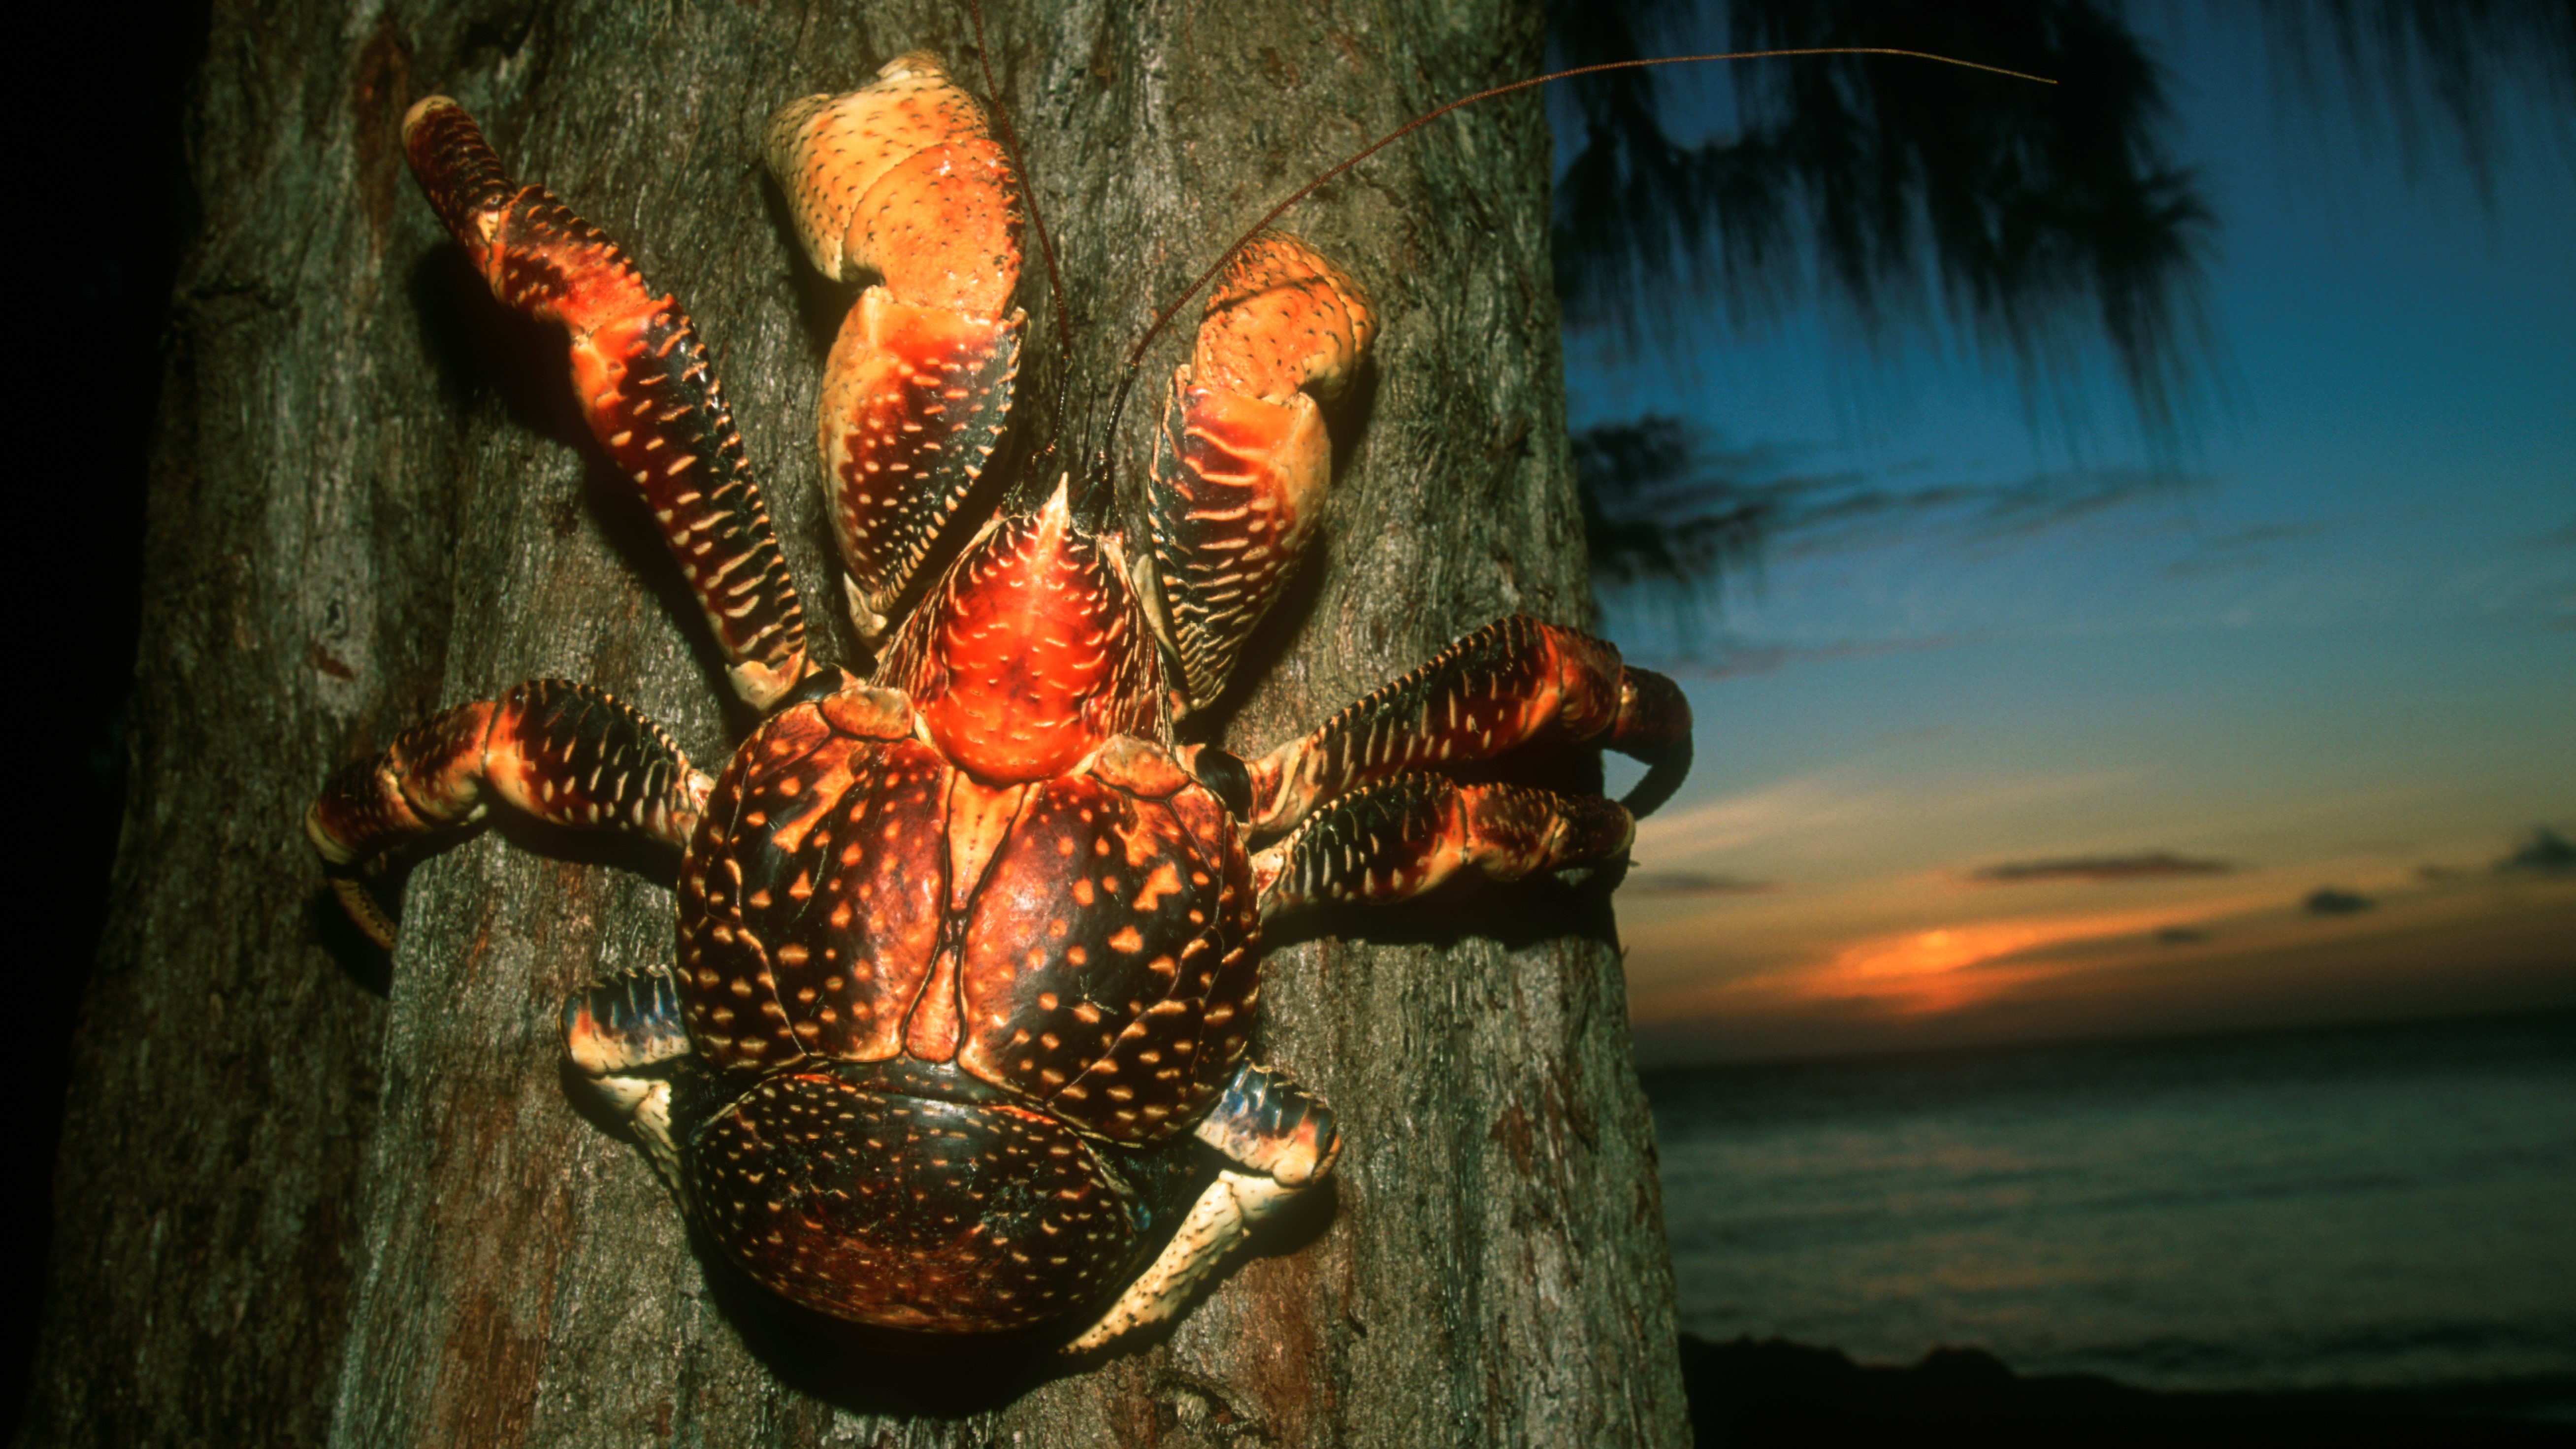 coconut crab attacks human video